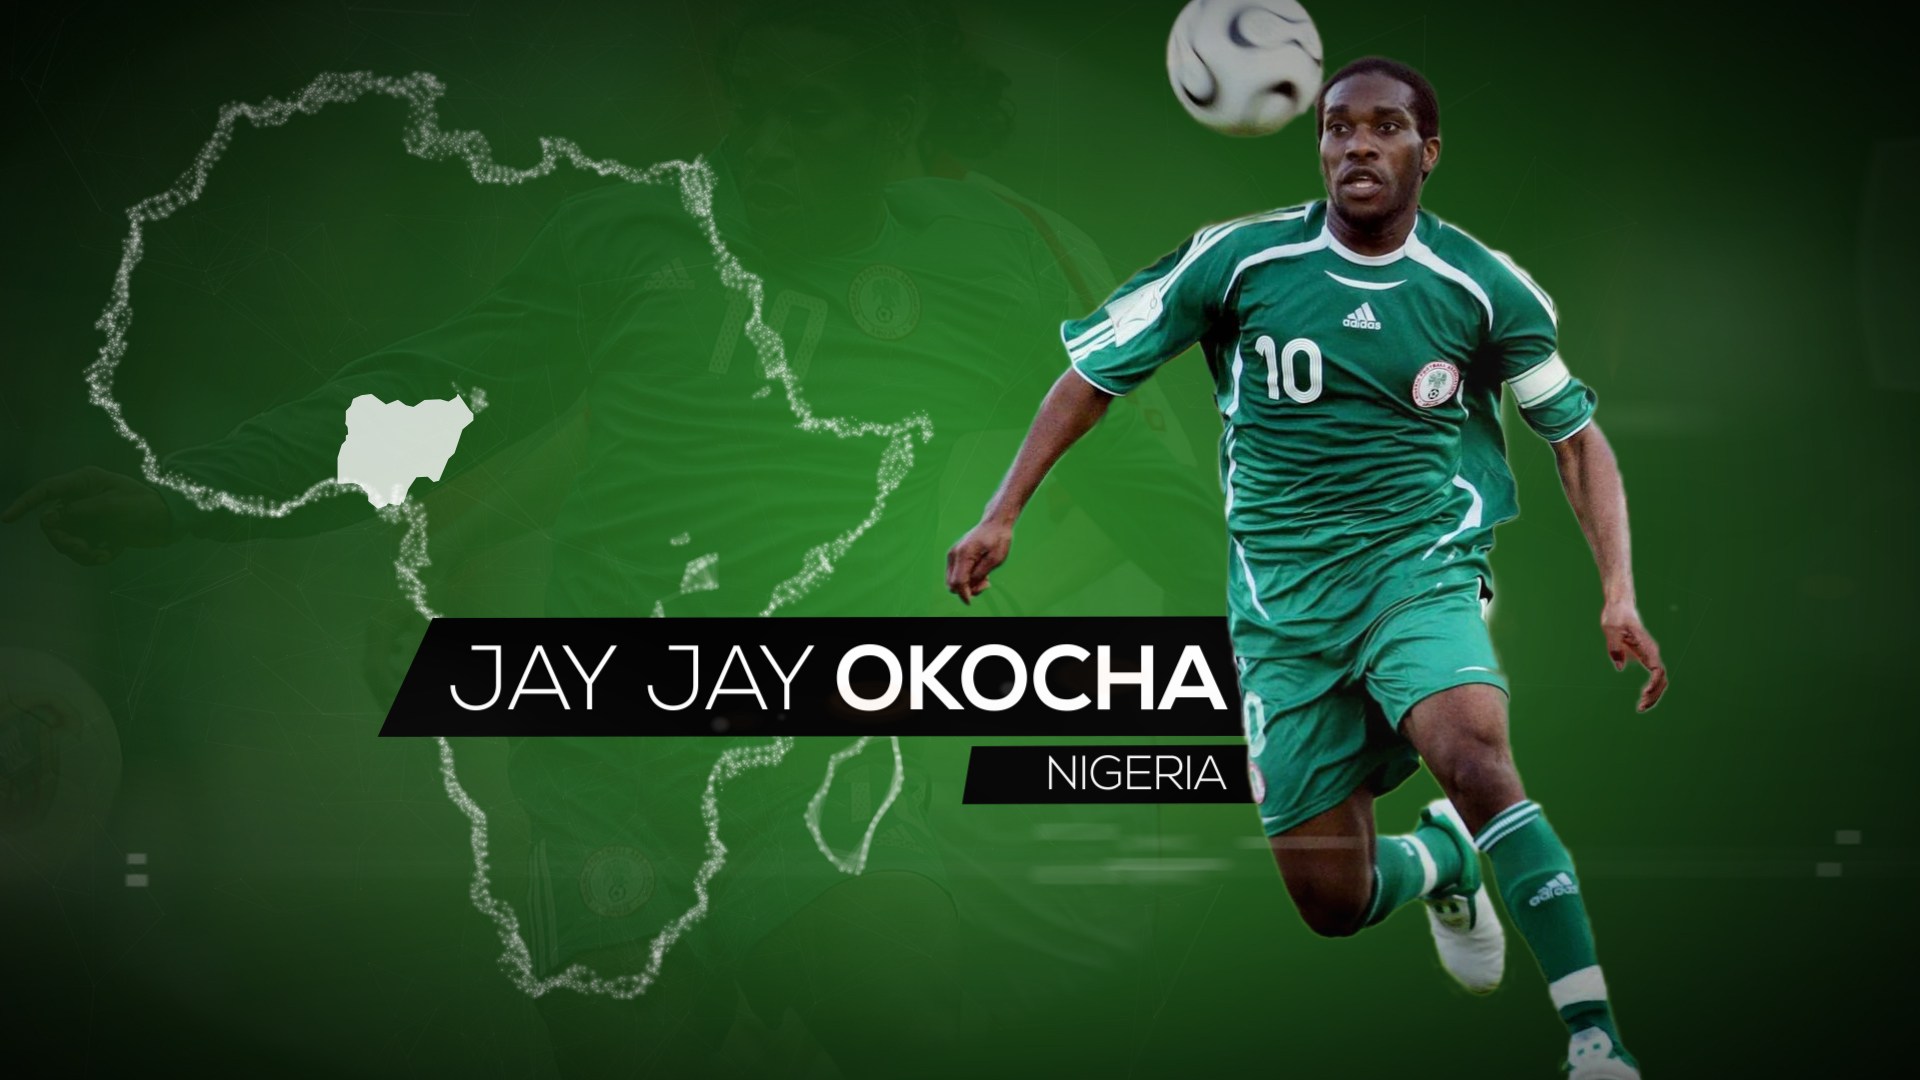 Jay Jay Okocha Africa 10 Motion Graphics 1